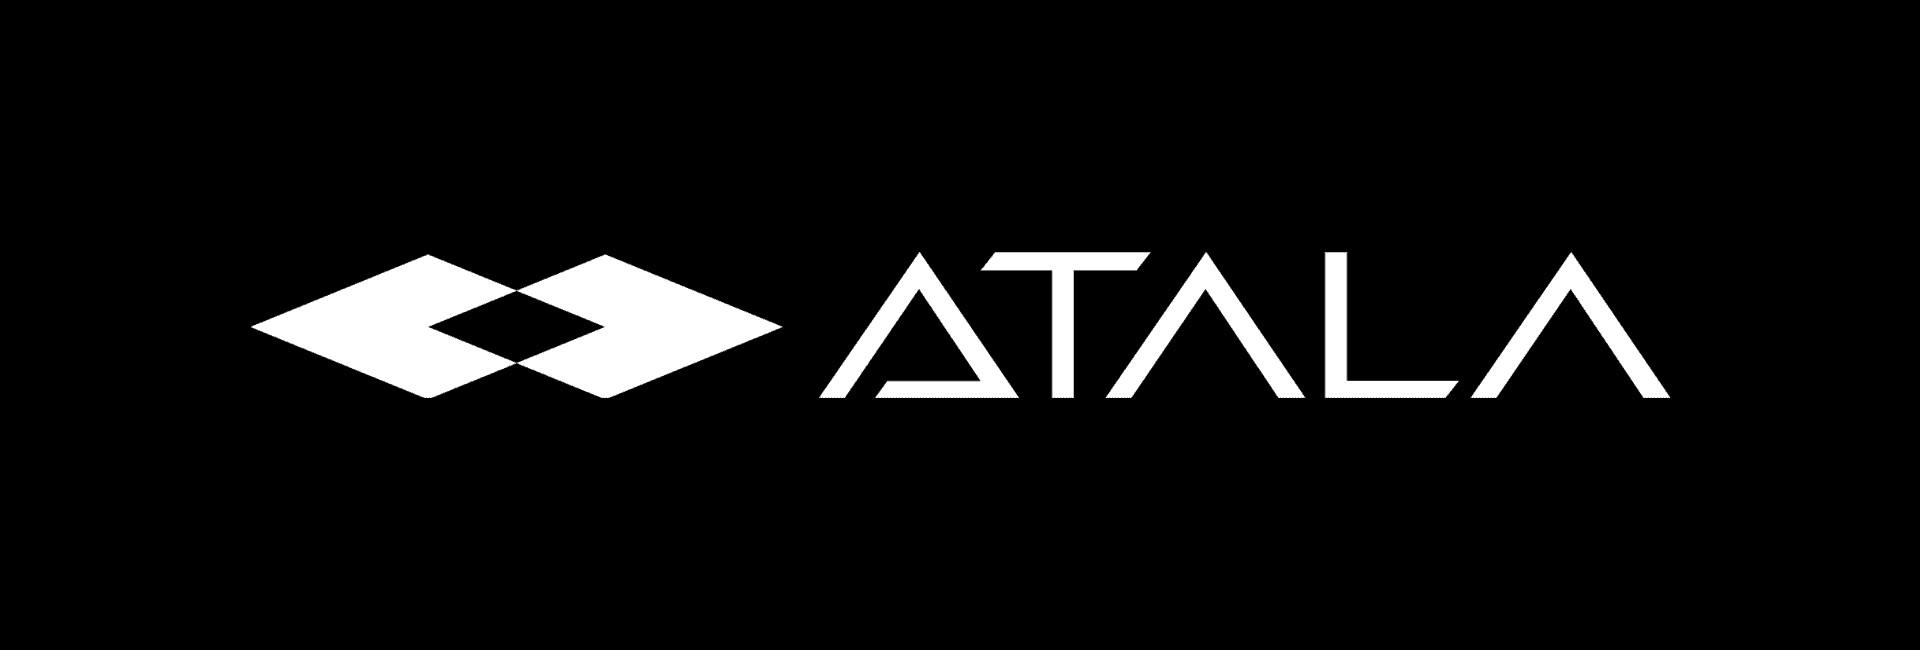 Company logo ATALA